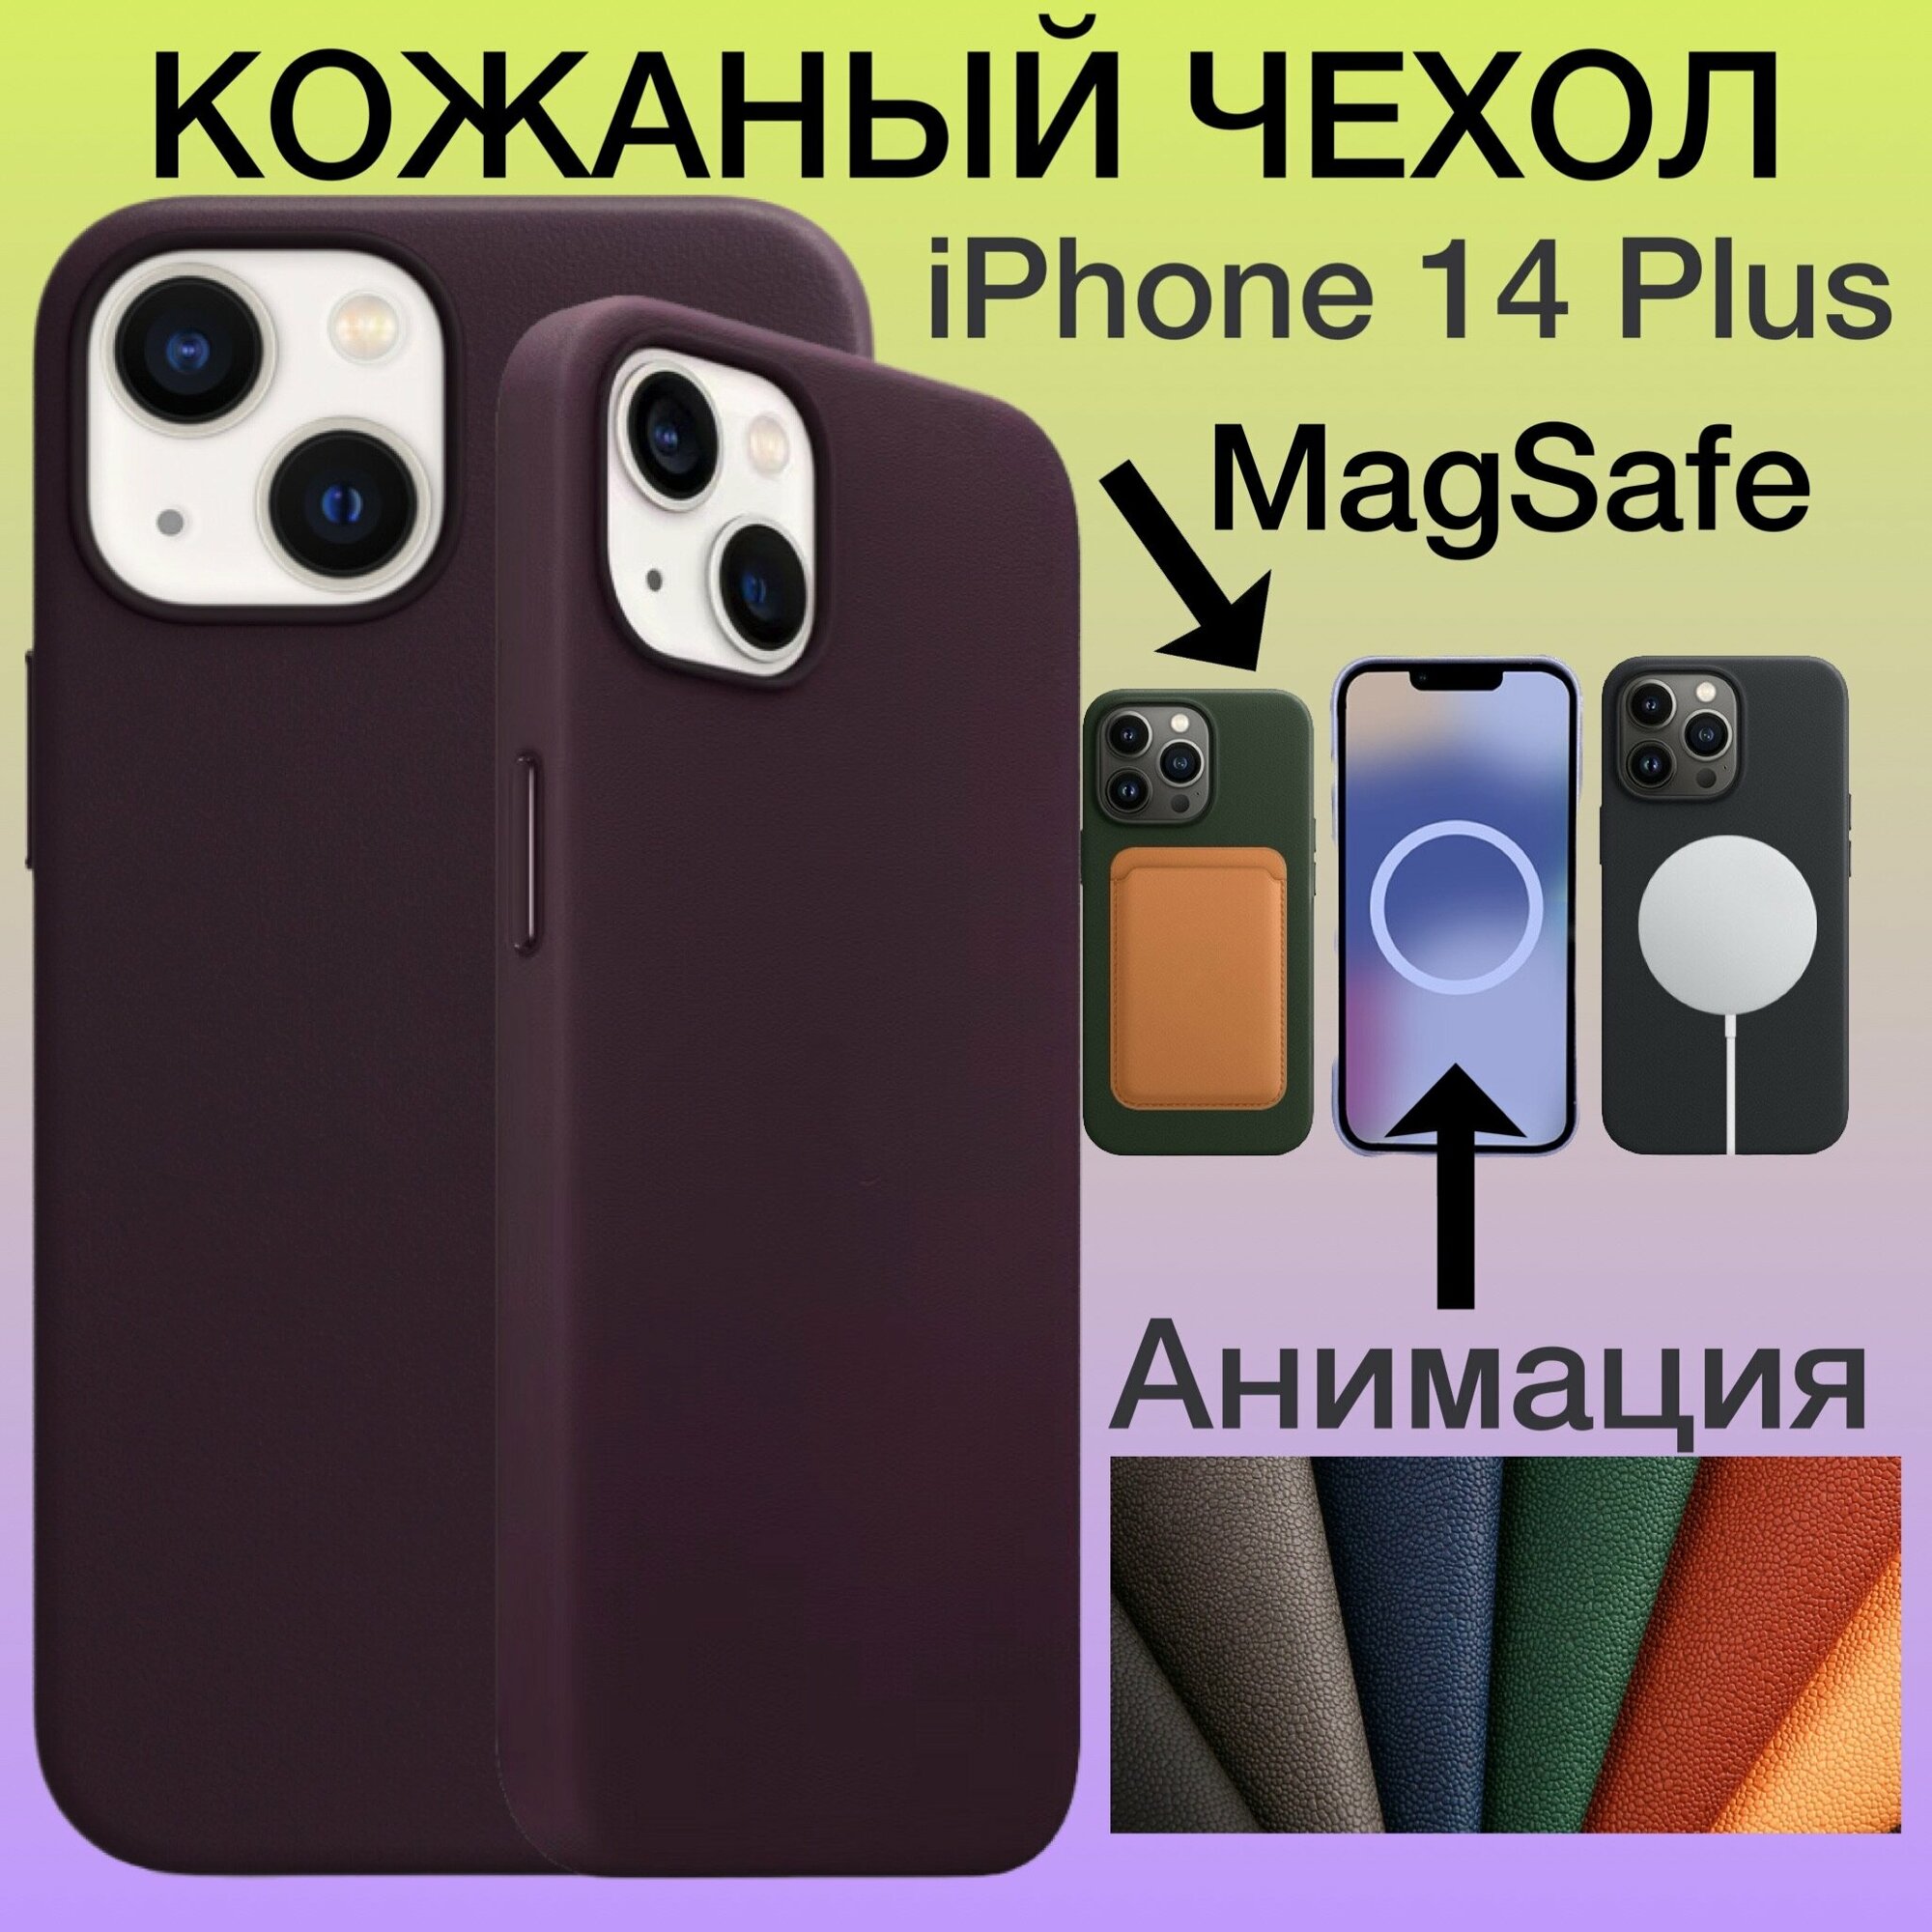 Кожаный чехол iPhone 14 Plus MagSafe Анимацией